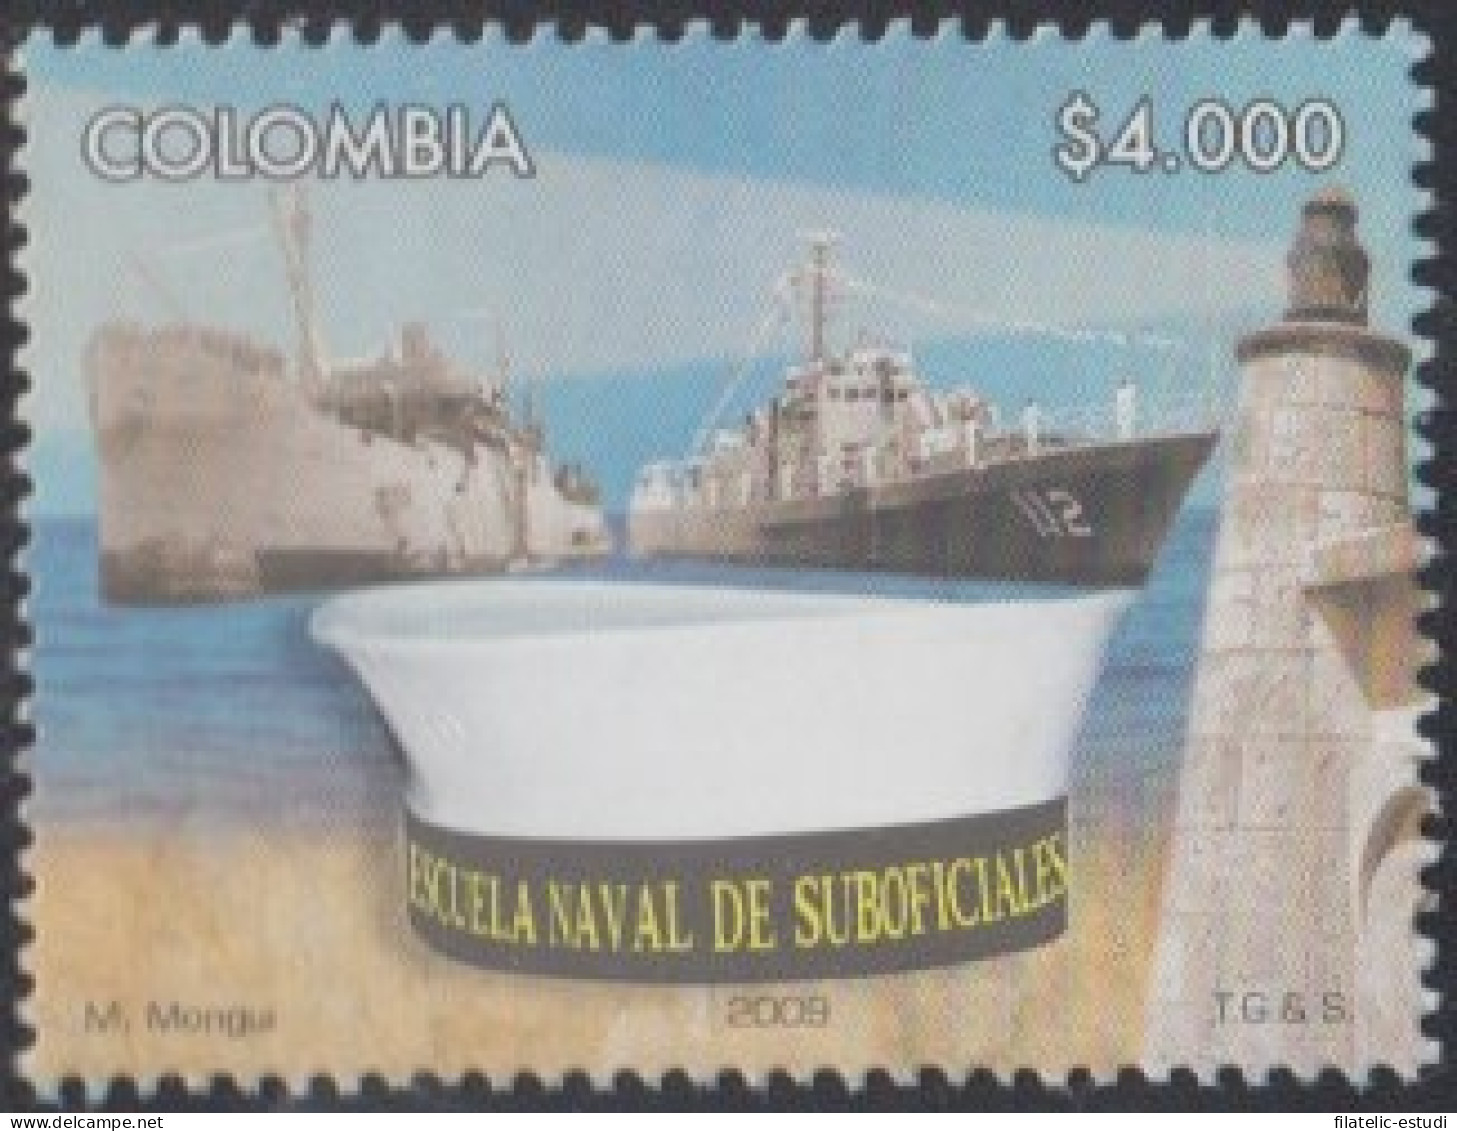 Colombia 1473 2009 Escuela Naval De Suboficiales MNH - Colombia